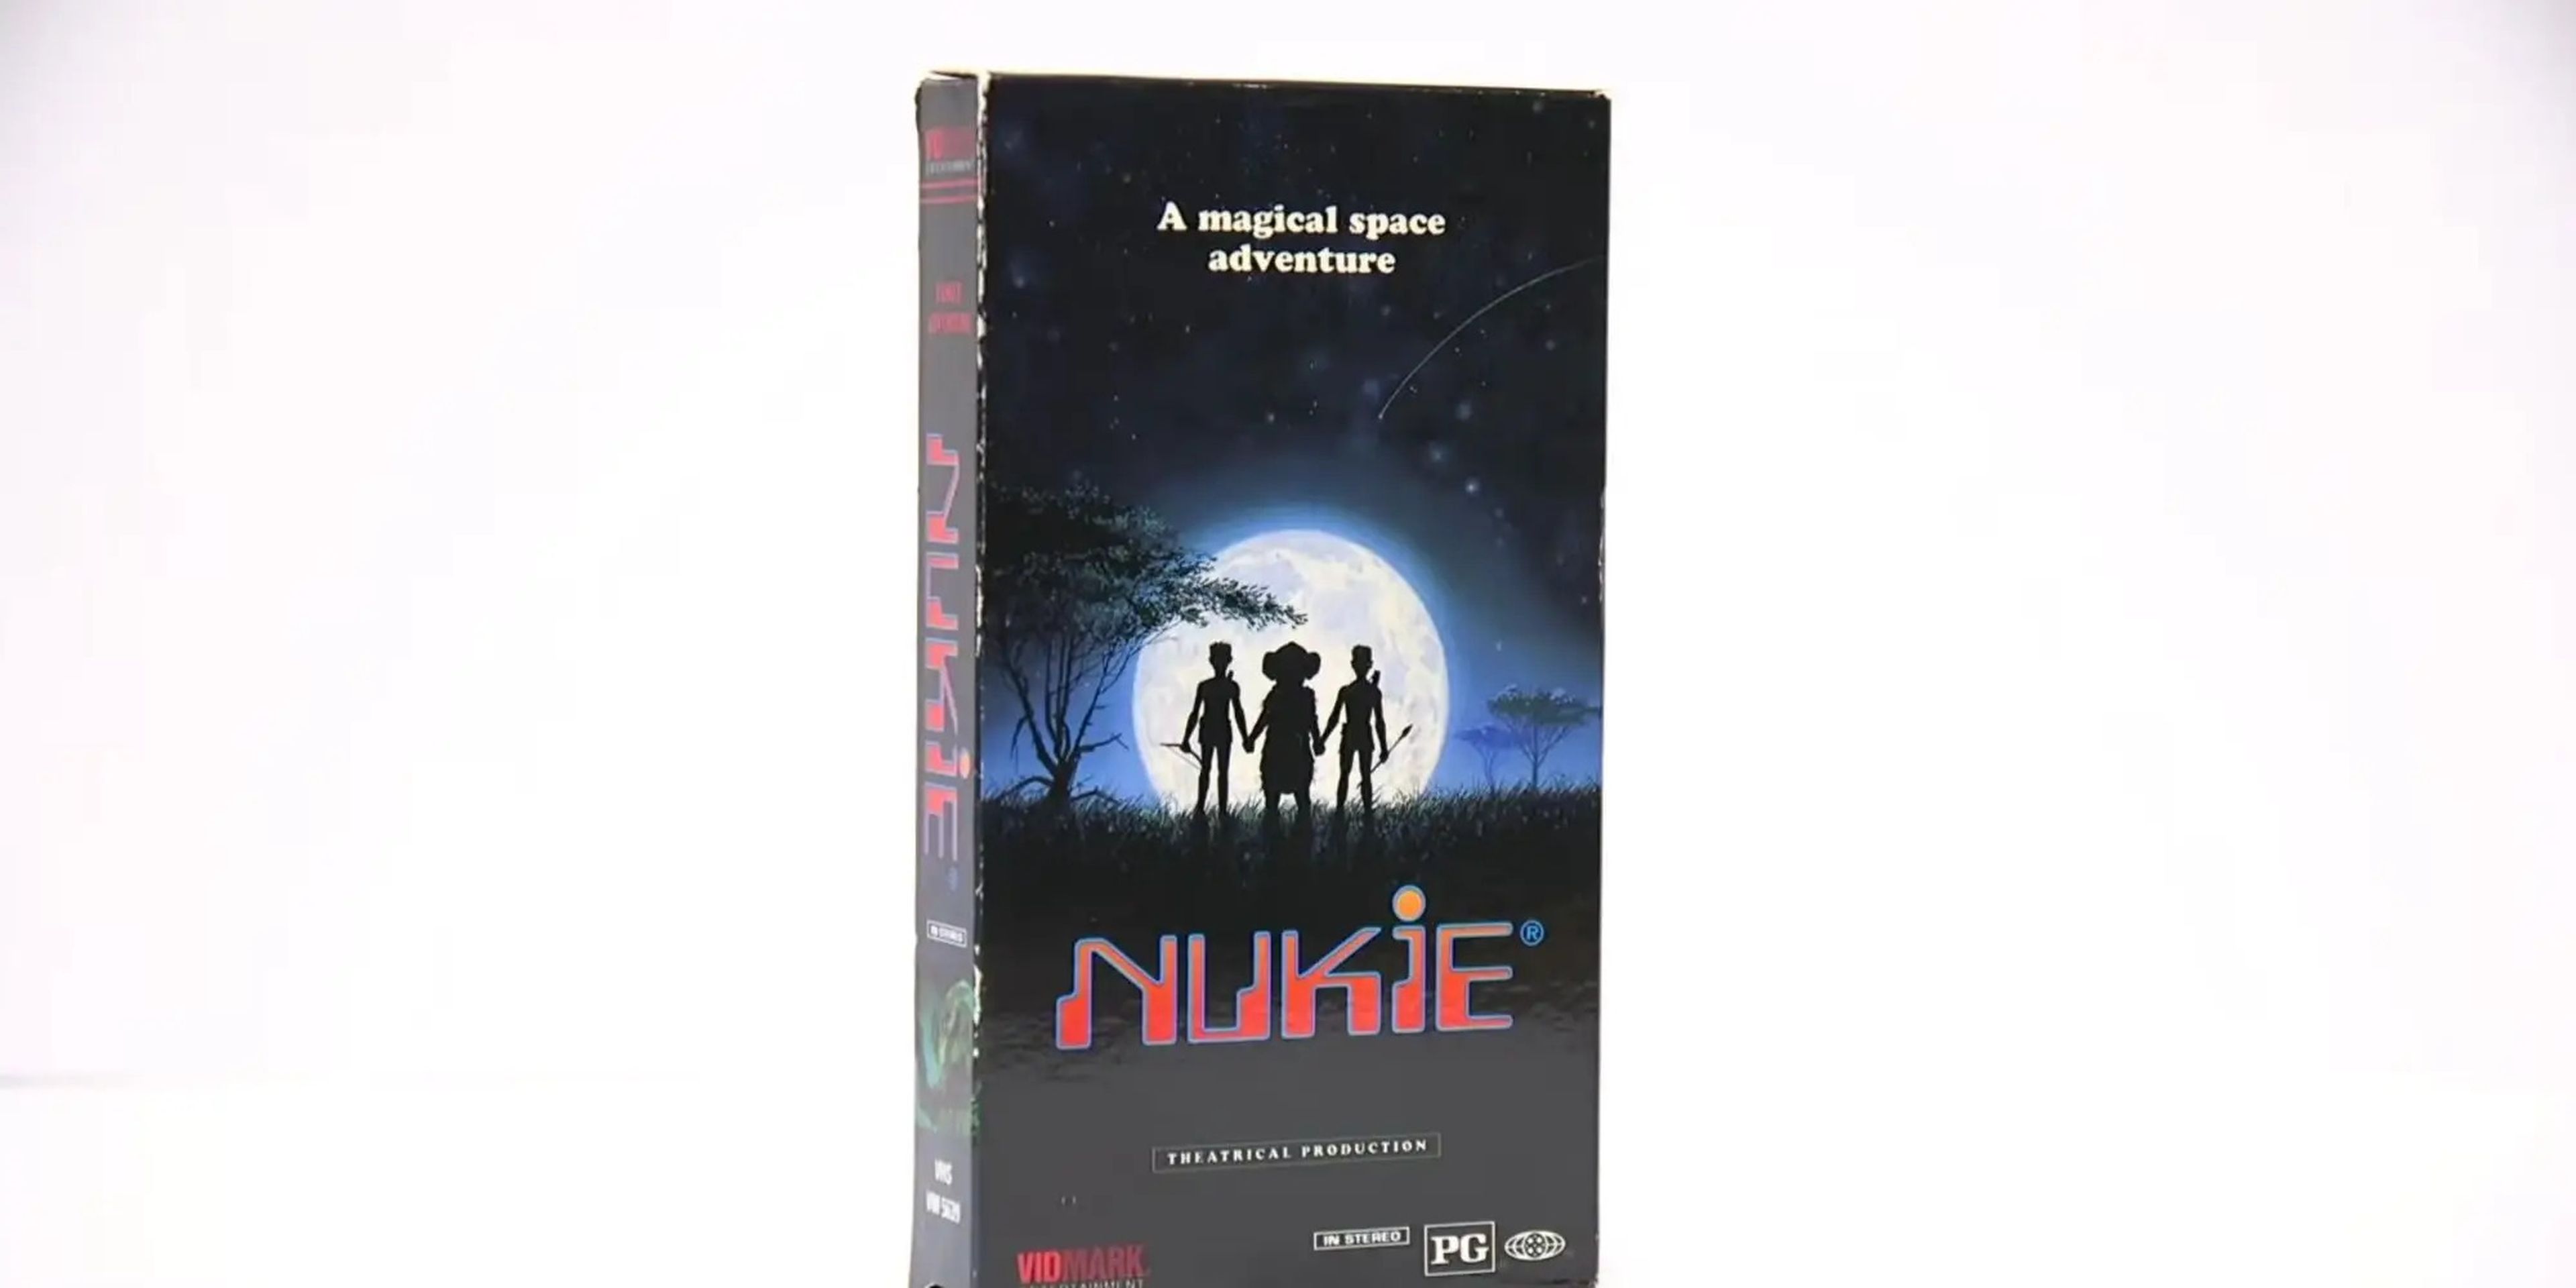 Cinta VHS de 'Nukie'.